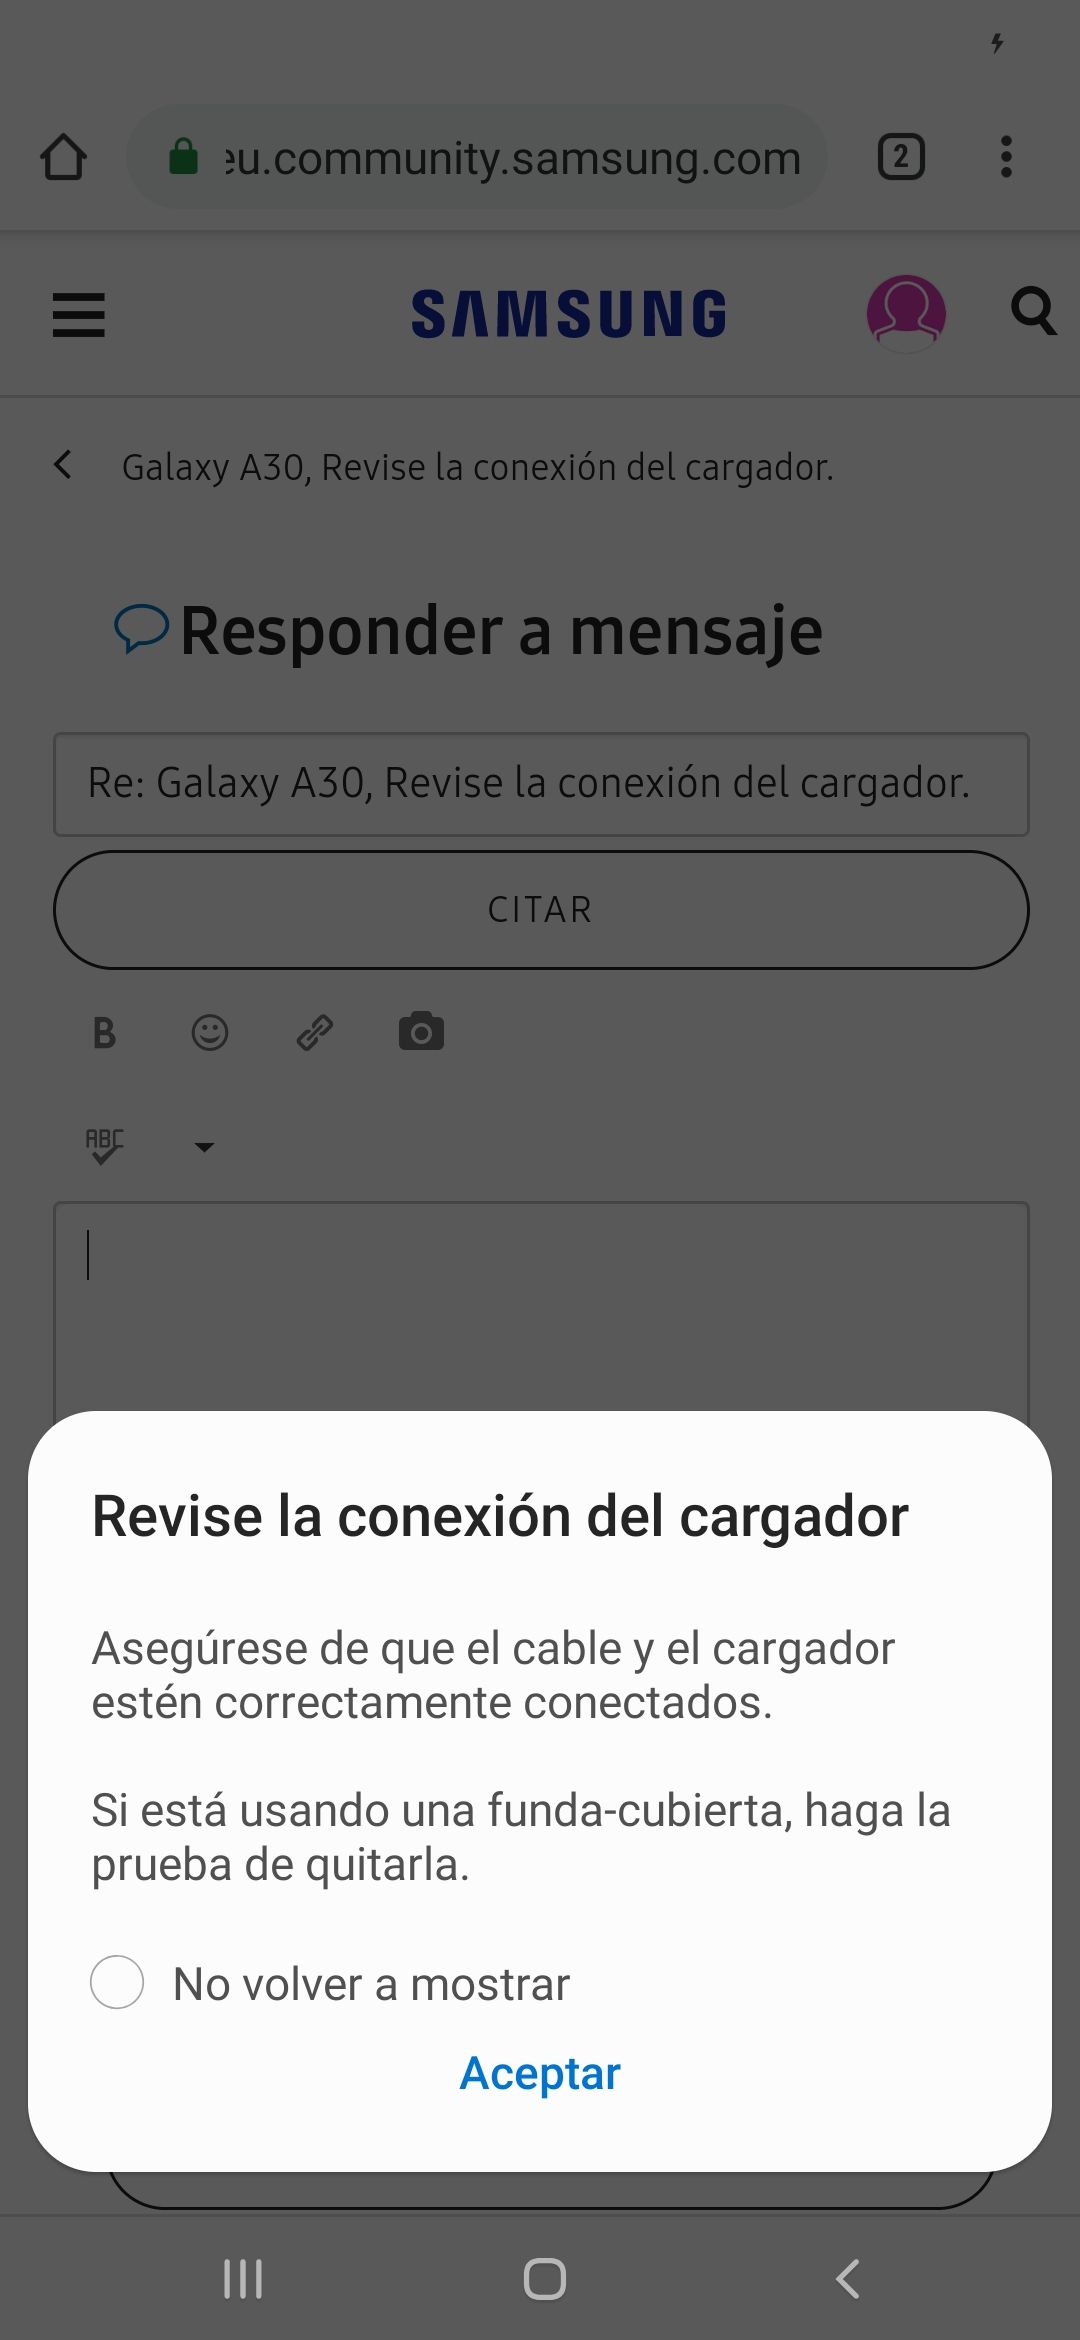 Solucionado: Galaxy A30, Revise la conexión del cargador. - Página 2 -  Samsung Community